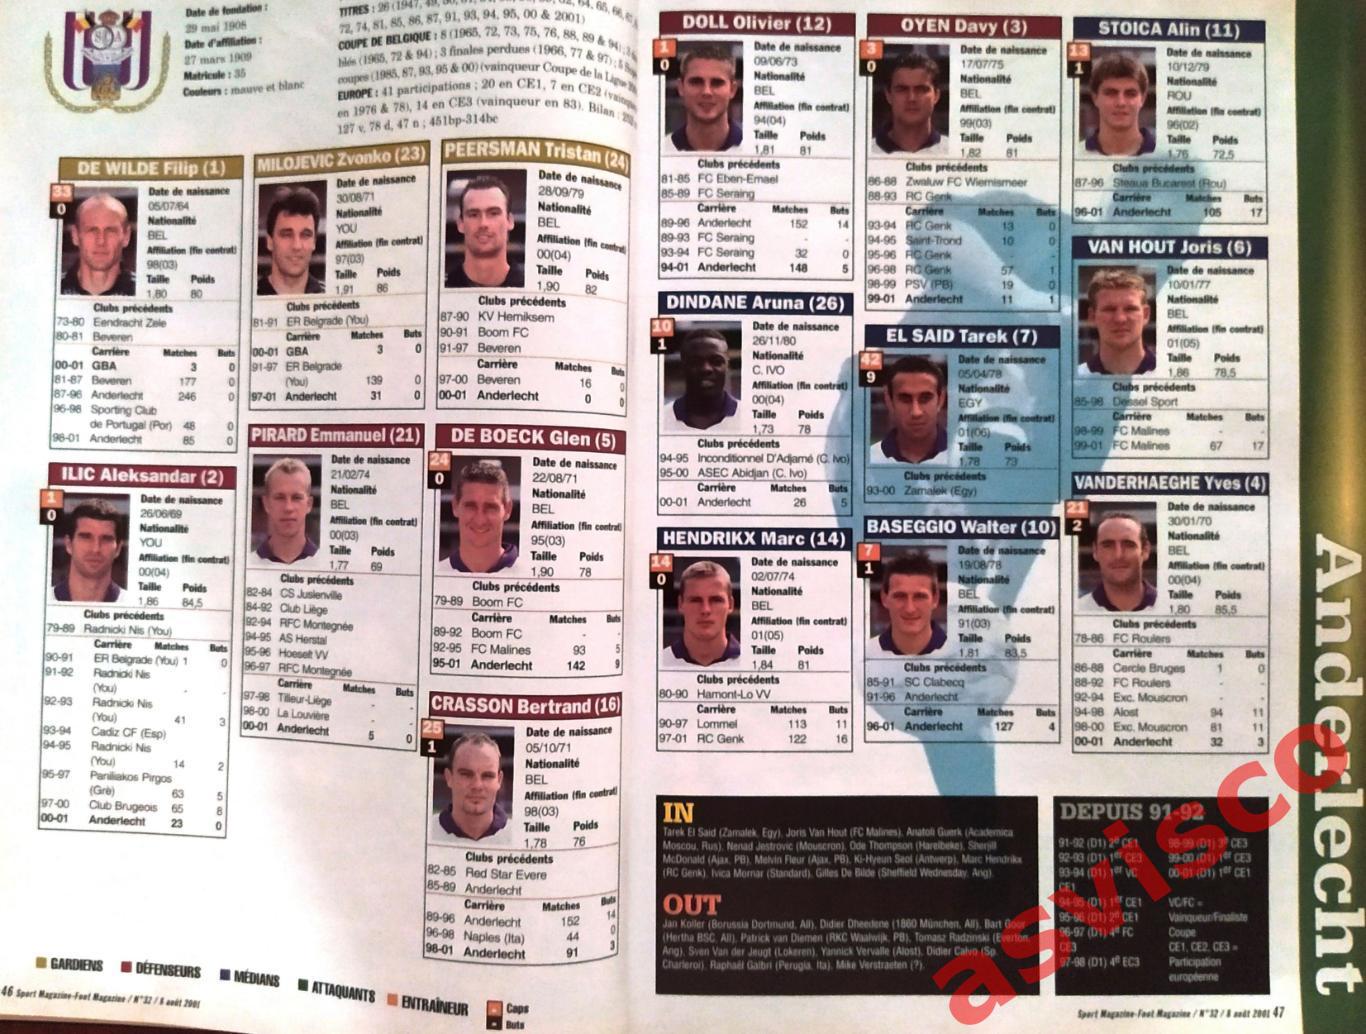 Чемпионат Бельгии по футболу. Сезон 2001-02 годов. Представление команд. 3